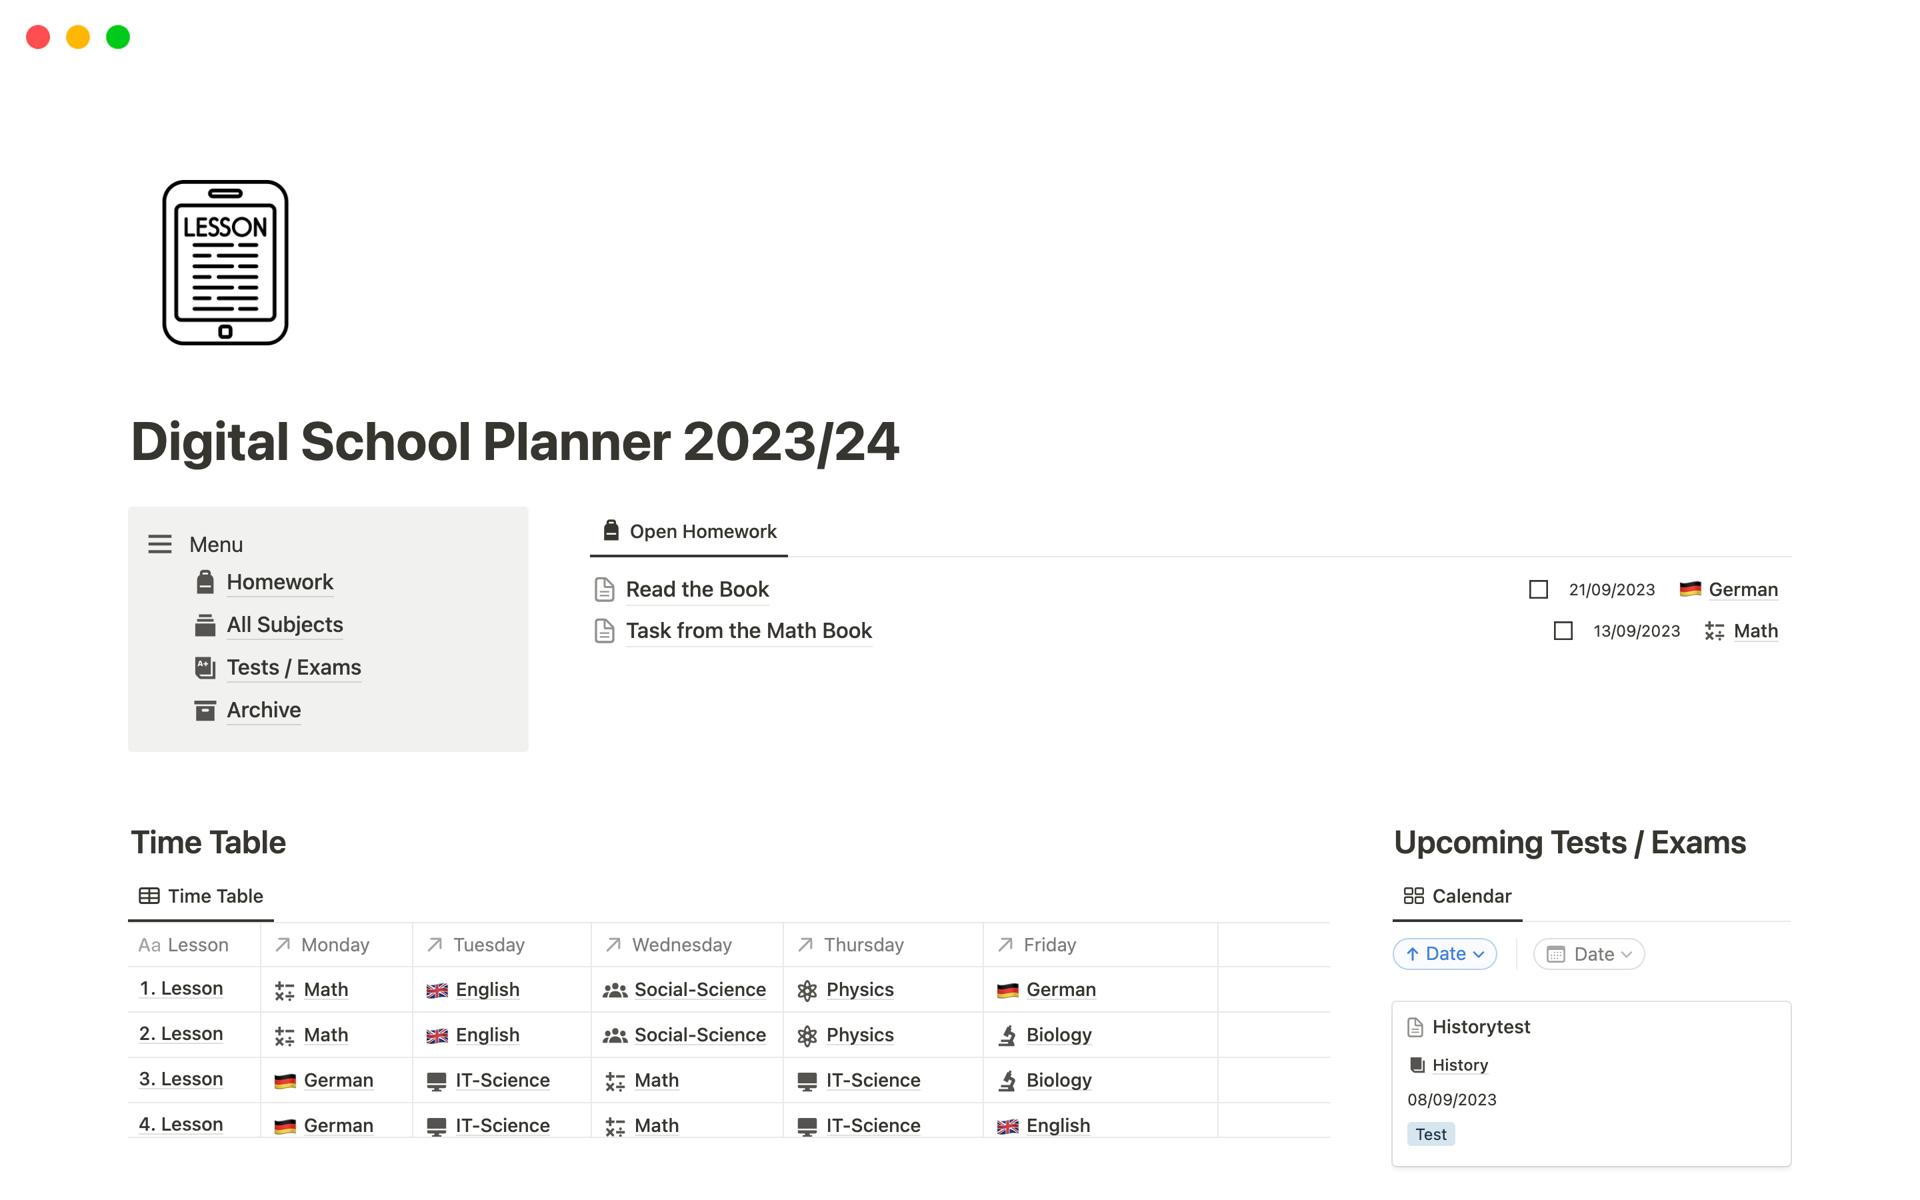 Uma prévia do modelo para Digital School Planner